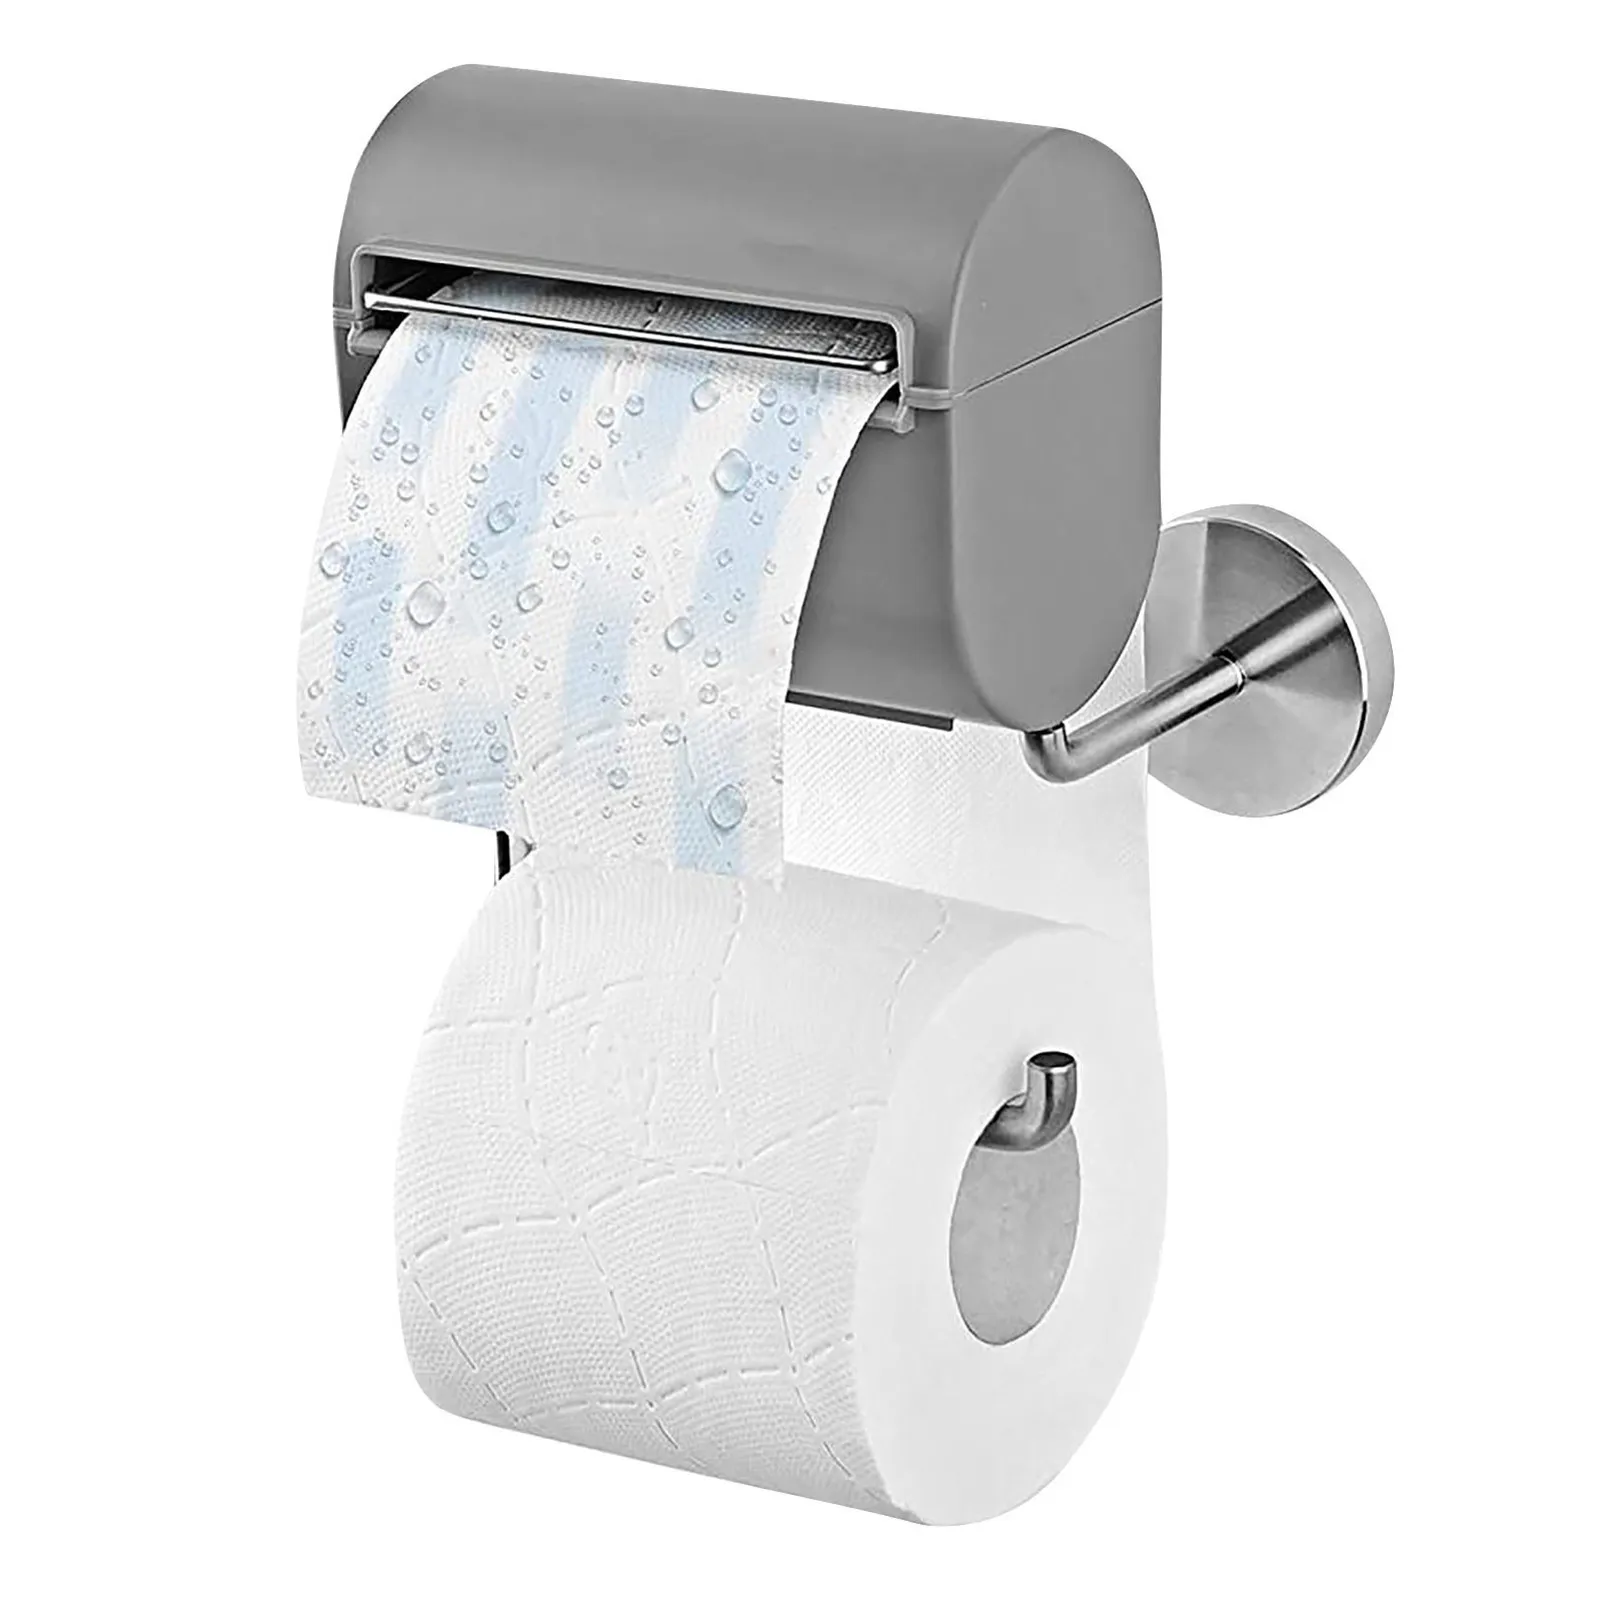 

Рулон бумаги для ванной держатель Punch-легко и быстро установить хранилище для туалетной бумаги стеллаж бытовой ванная комната аксессуары д...